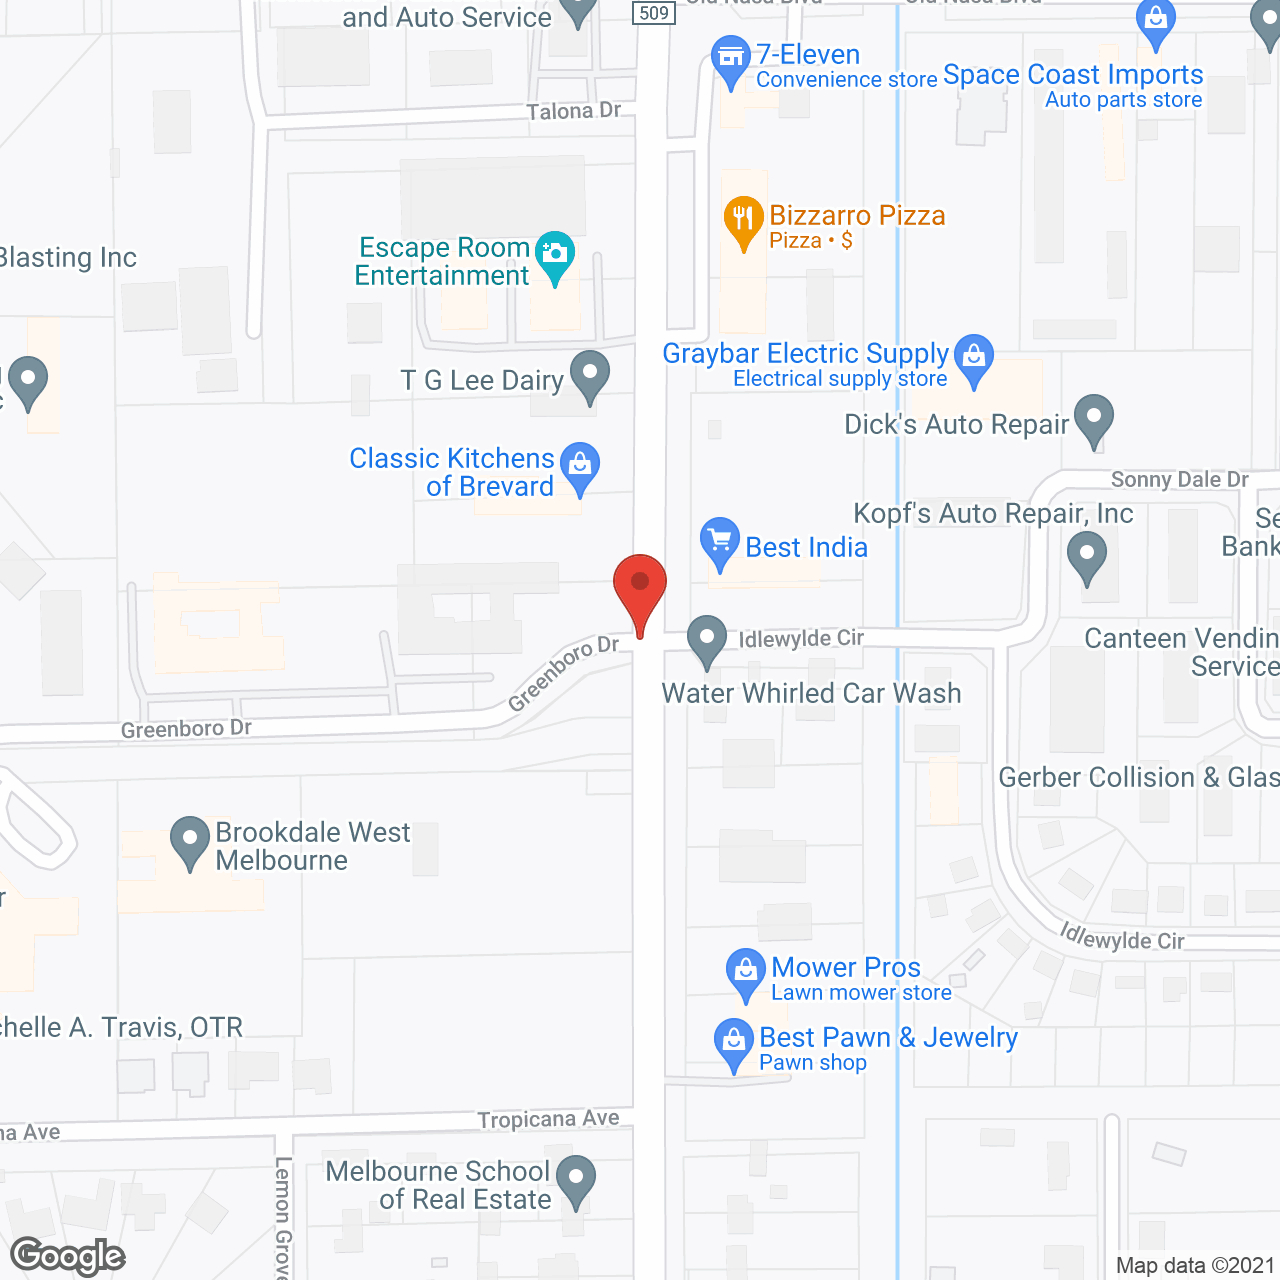 Brookdale West Melbourne in google map